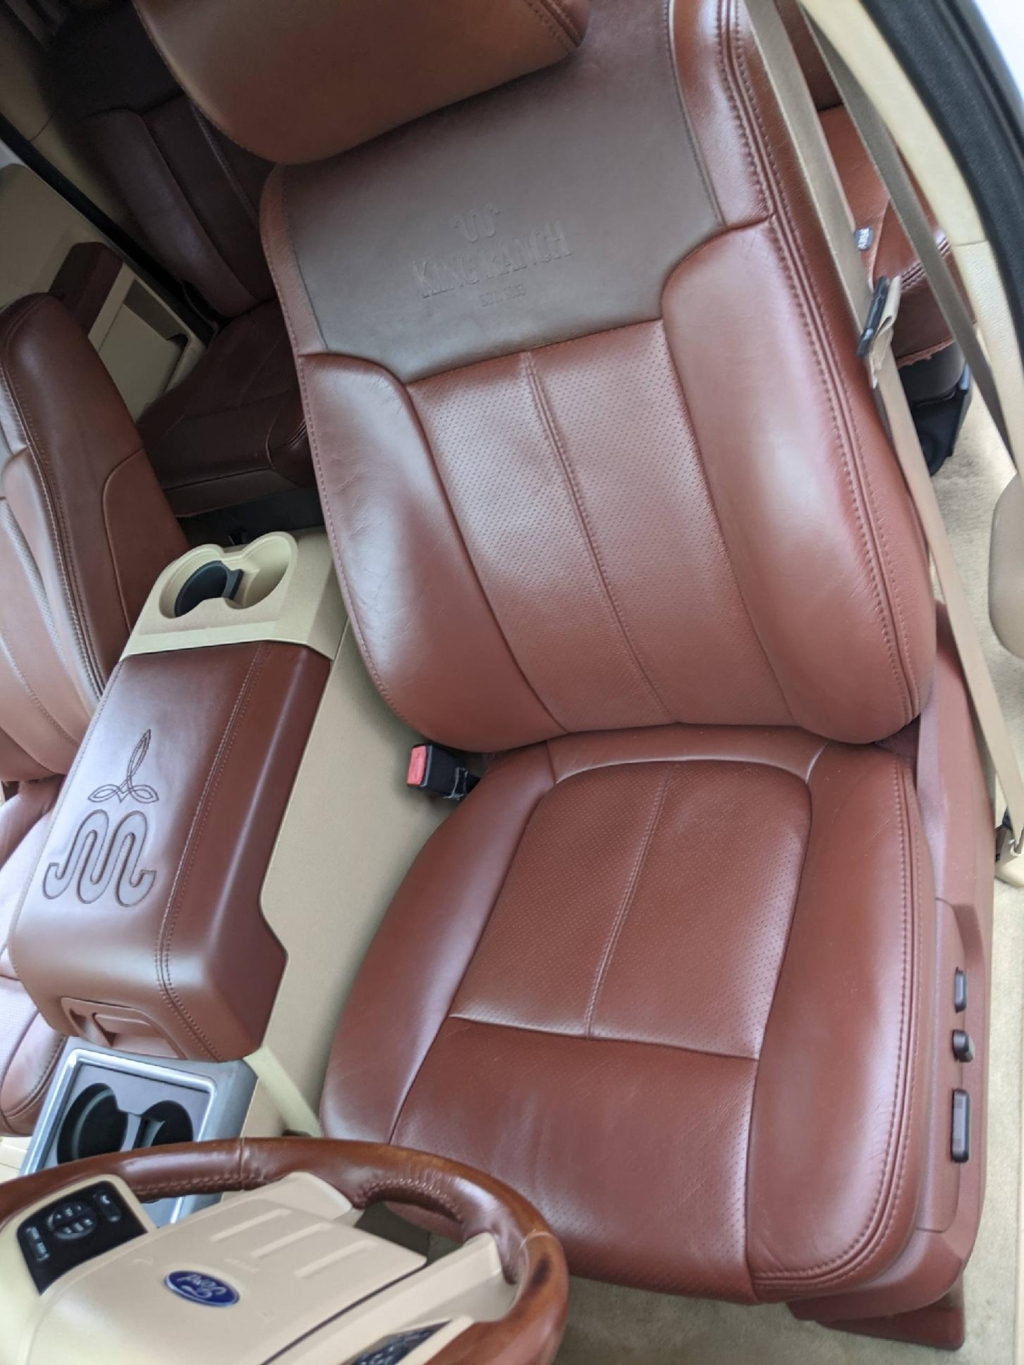 Car Leather Seat Repair  Car Upholstery Repair Orlando FL